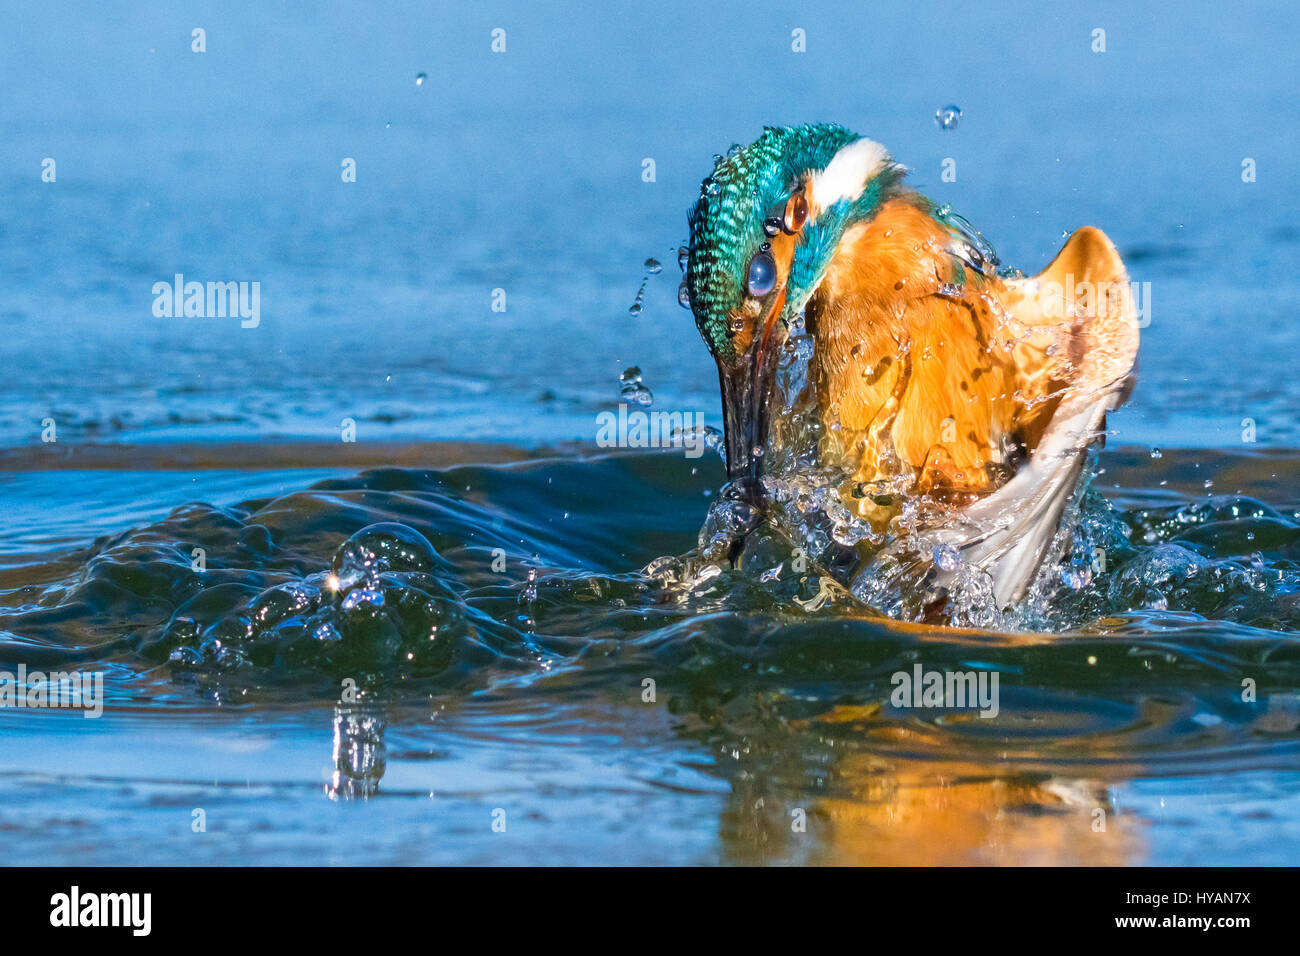 PALOVEC, CROACIA: Dos años de búsqueda para capturar la imagen perfecta de kingfisher ha sido finalmente completada por una obsesión del técnico de tráfico. Mostrar imágenes increíbles fotografías de la super-rápida kingfisher buceo en hasta 25 millas por hora en el agua cristalina y atrapar su comida de pescado. Enfocado completamente sobre su presa, el Kingfisher's steely foco y movimiento rápido de iluminación ha sido sensacionalmente capturado en esta serie de fotografías. A tiempo parcial, fotógrafo y técnico de tráfico Petar Sabol (33) estaba tan cautivado por la hermosa pajarito vio cerca de su casa en Palovec, CRO Foto de stock